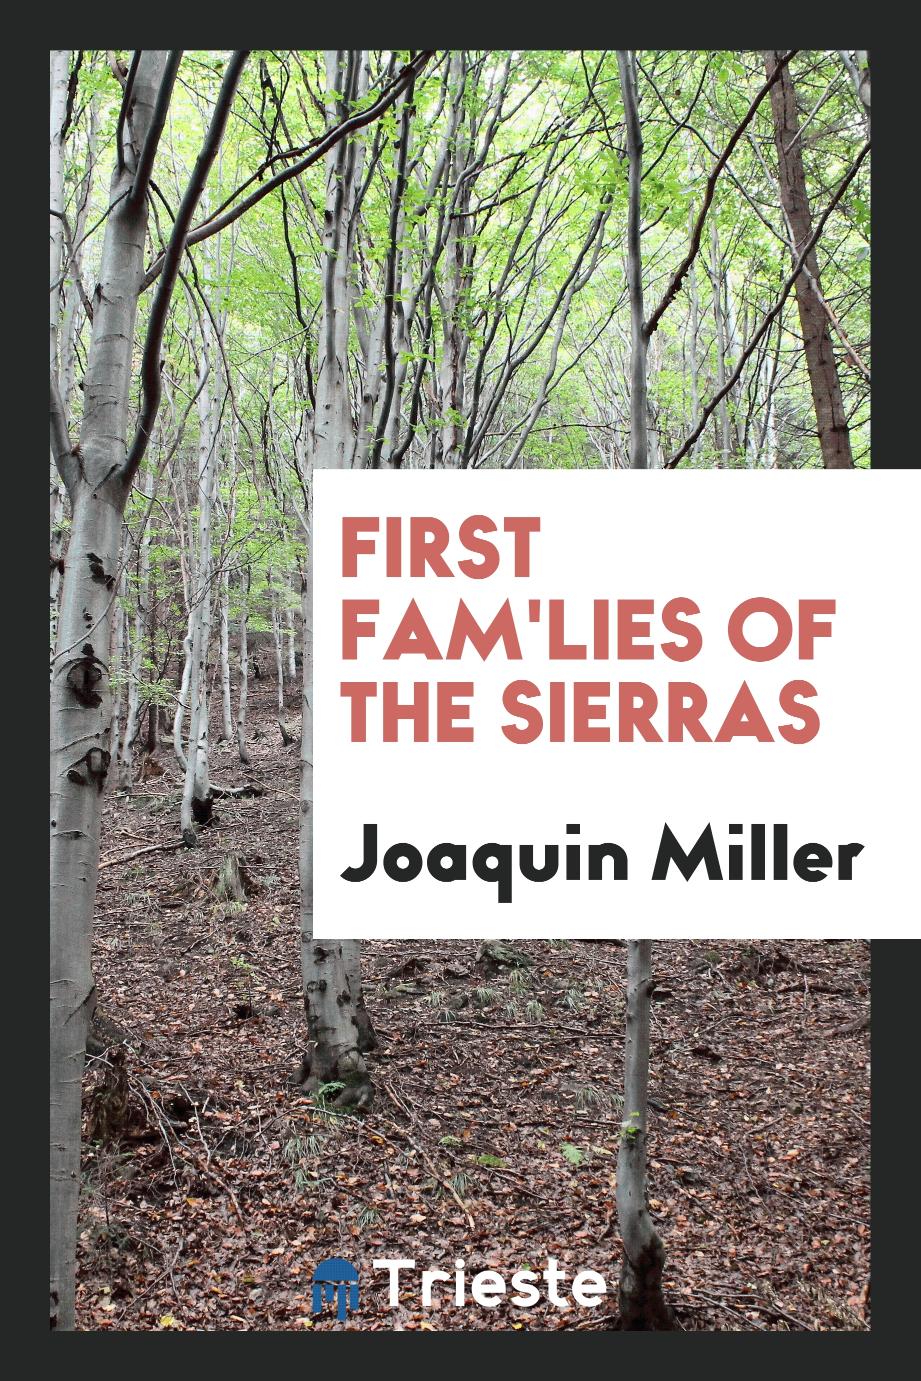 First fam'lies of the Sierras